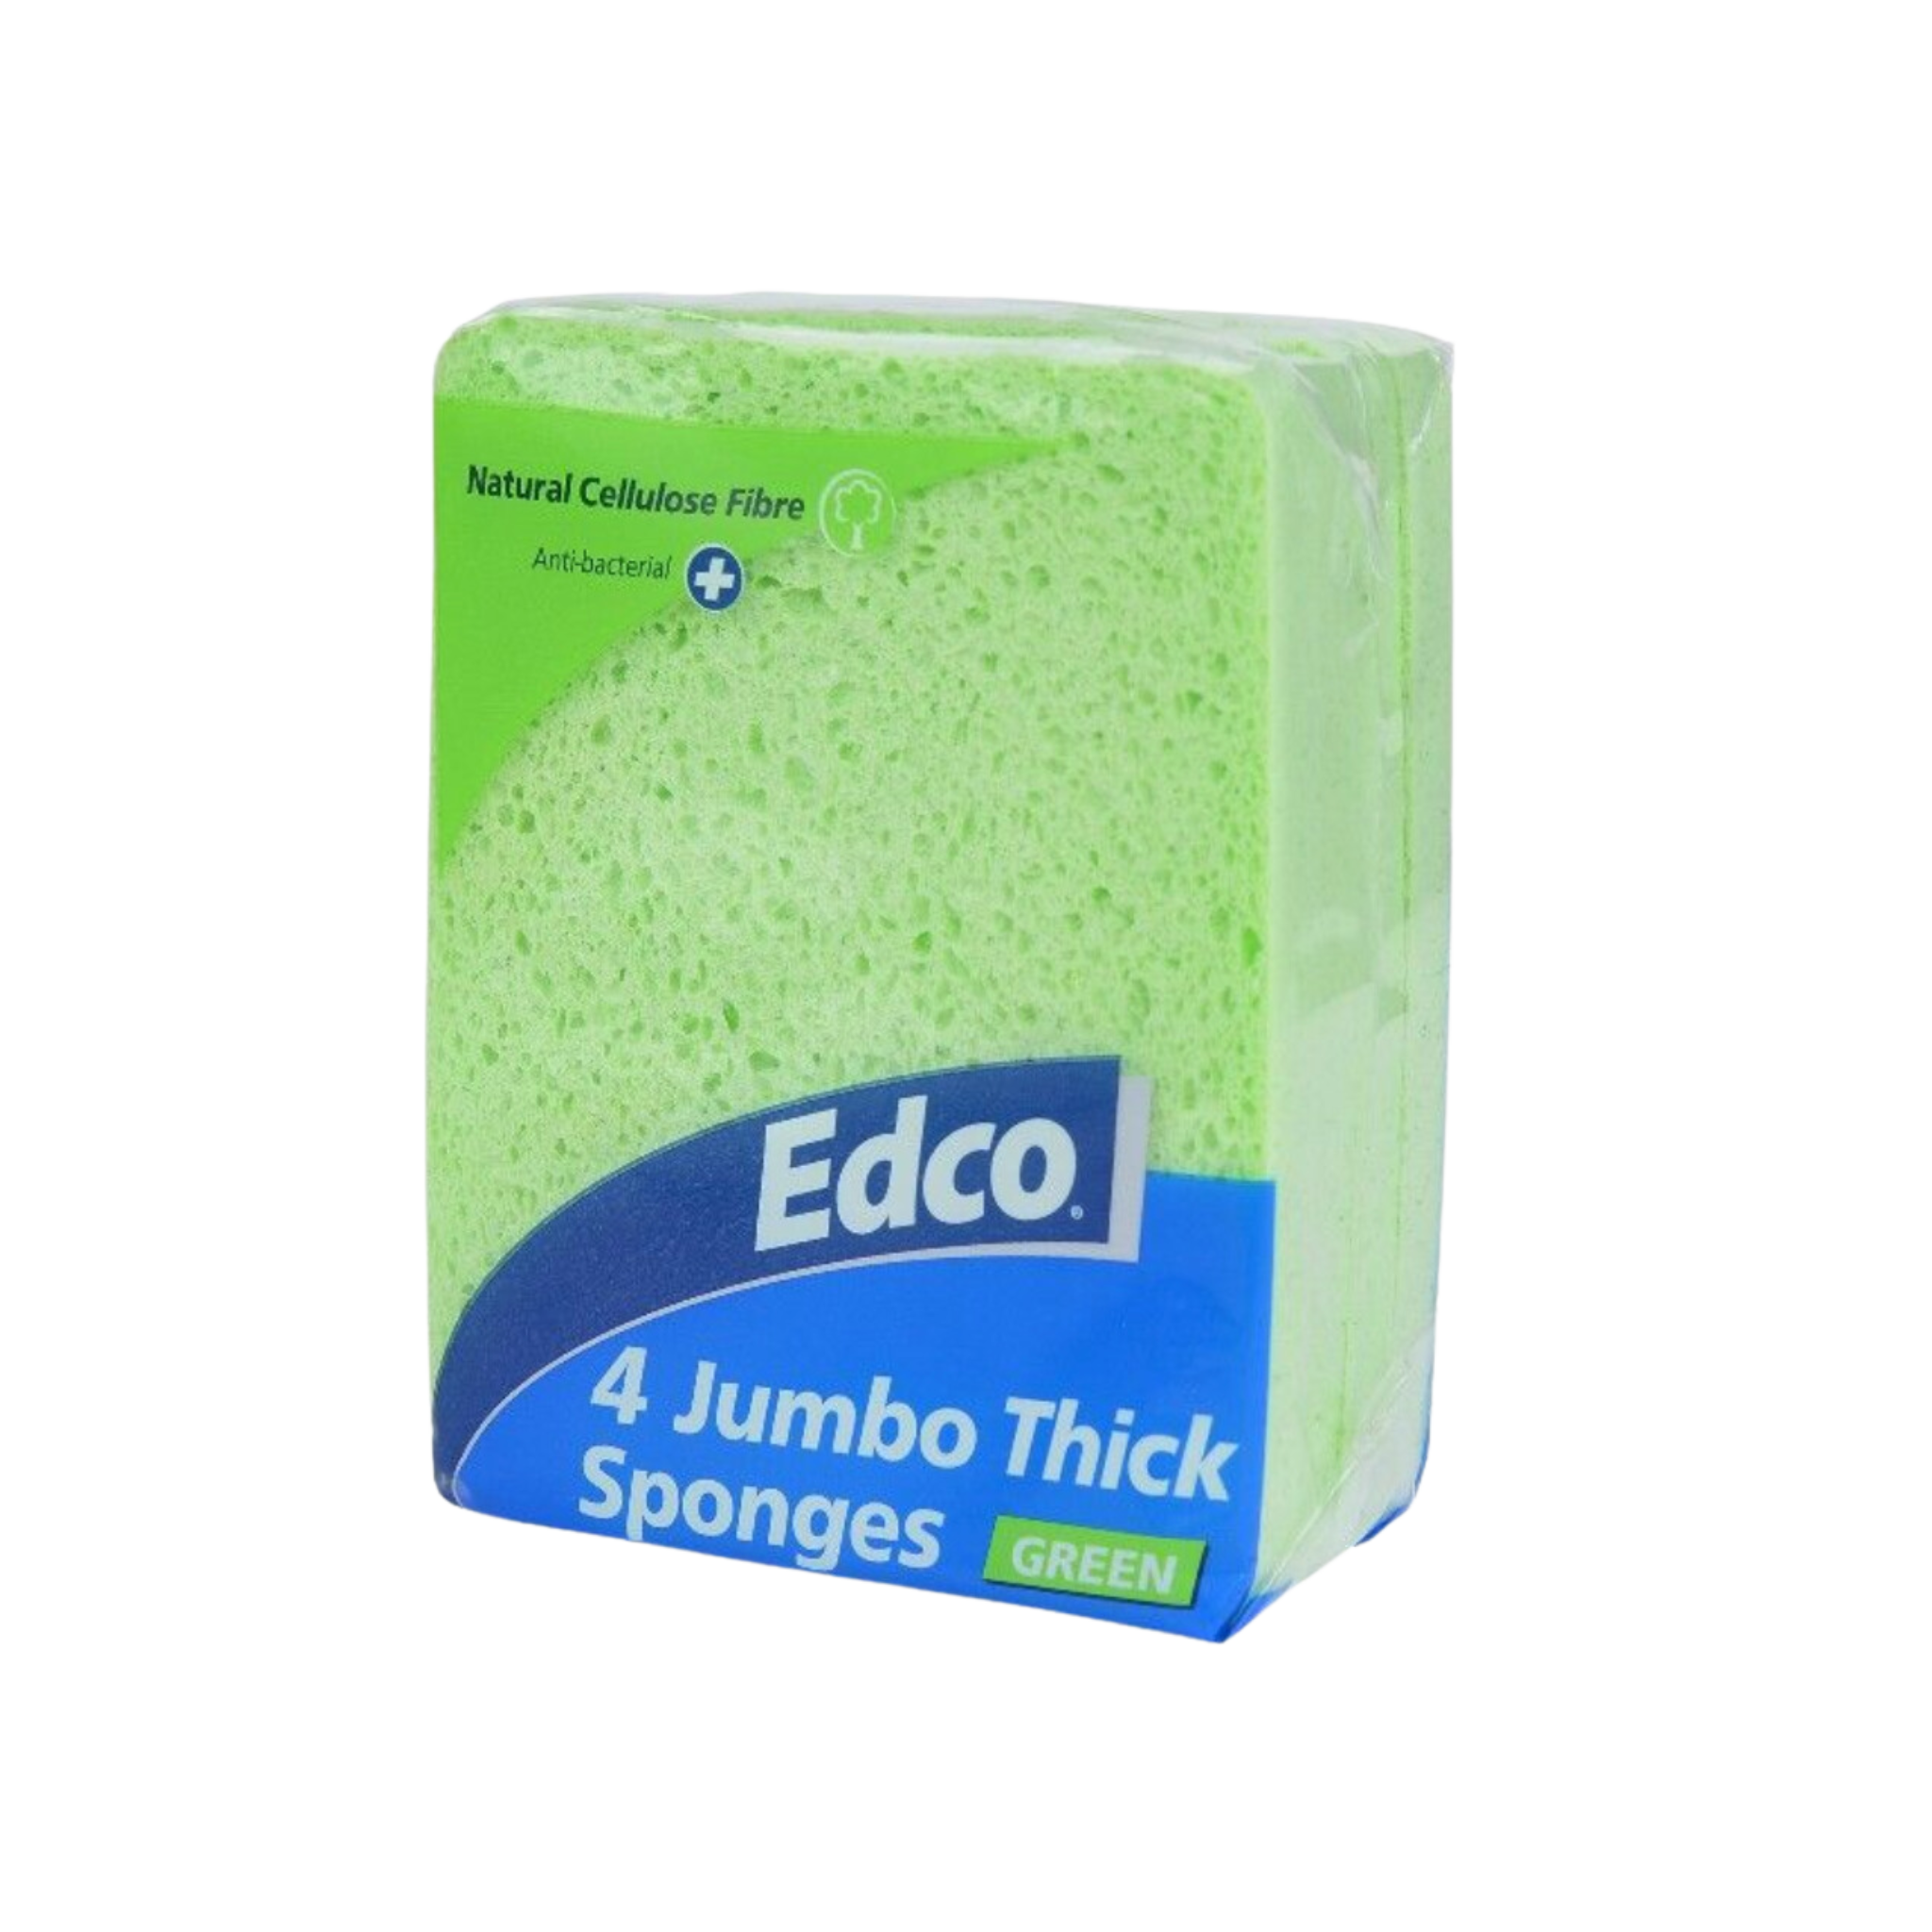 Edco Jumbo Sponge 4 Pack - Green